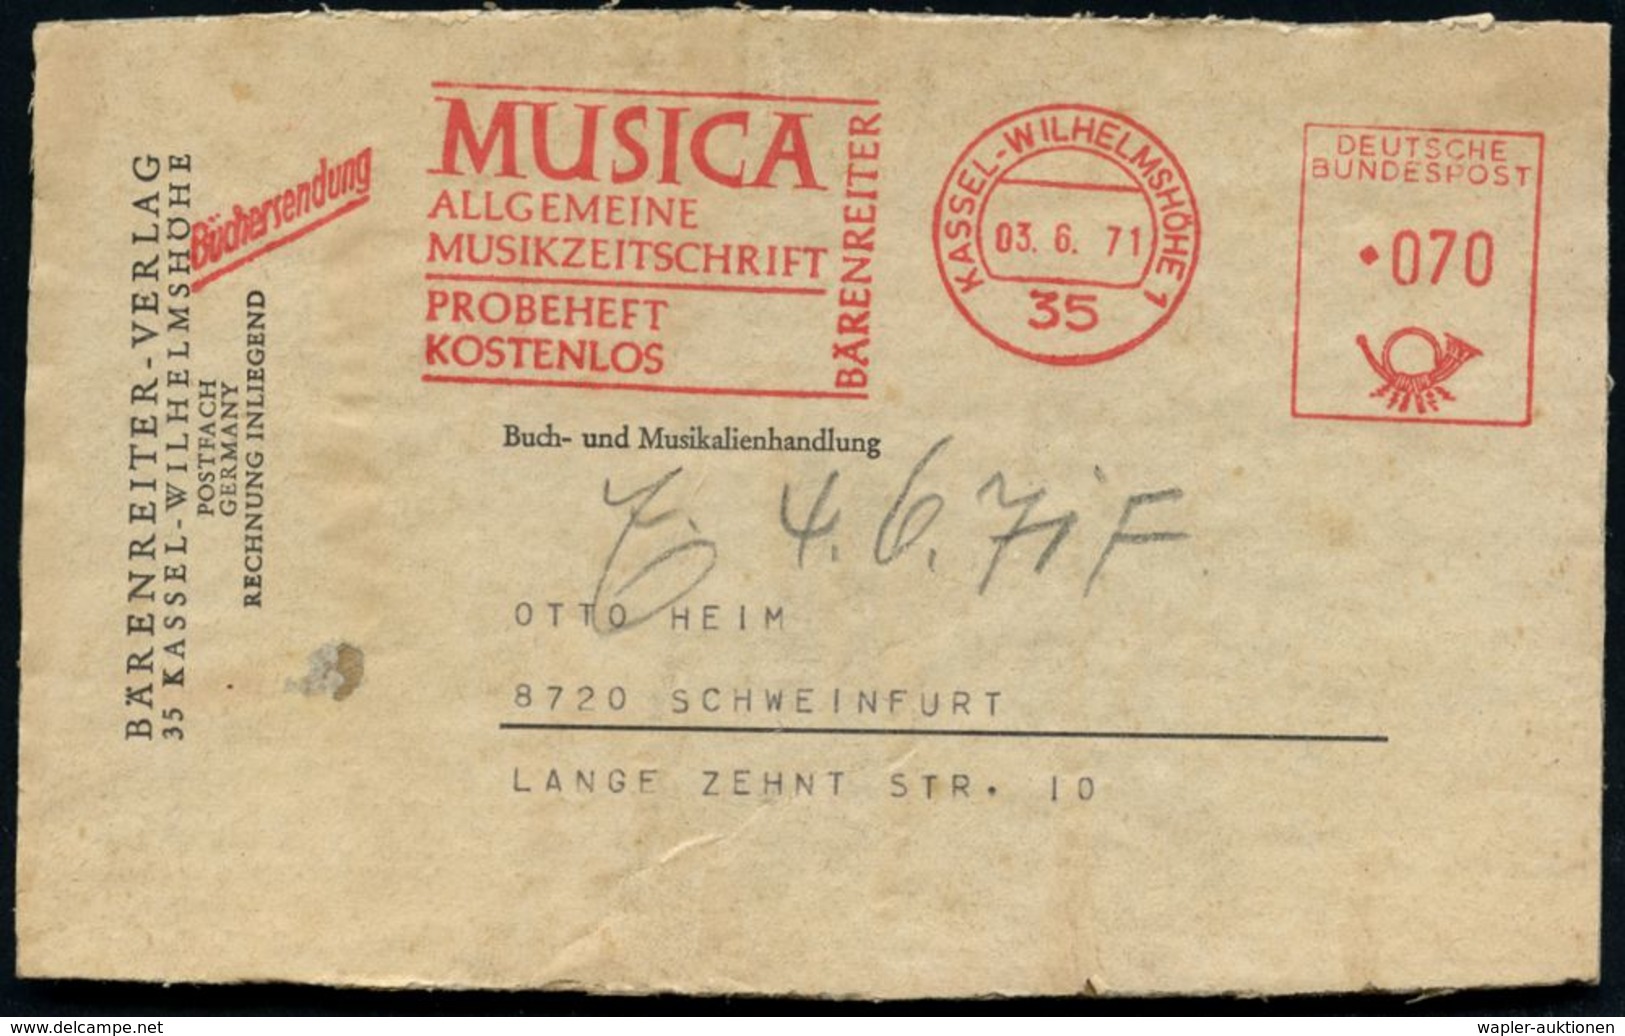 MUSIK-VERLAGE : 35 KASSEL-WILHELMSHÖHE 1/ MUSICA/ ALLGEM./ MUSIKZEITSCHRIFT../ BÄRENREITER 1971 (3.6.) AFS 070 Pf. + Zus - Musique